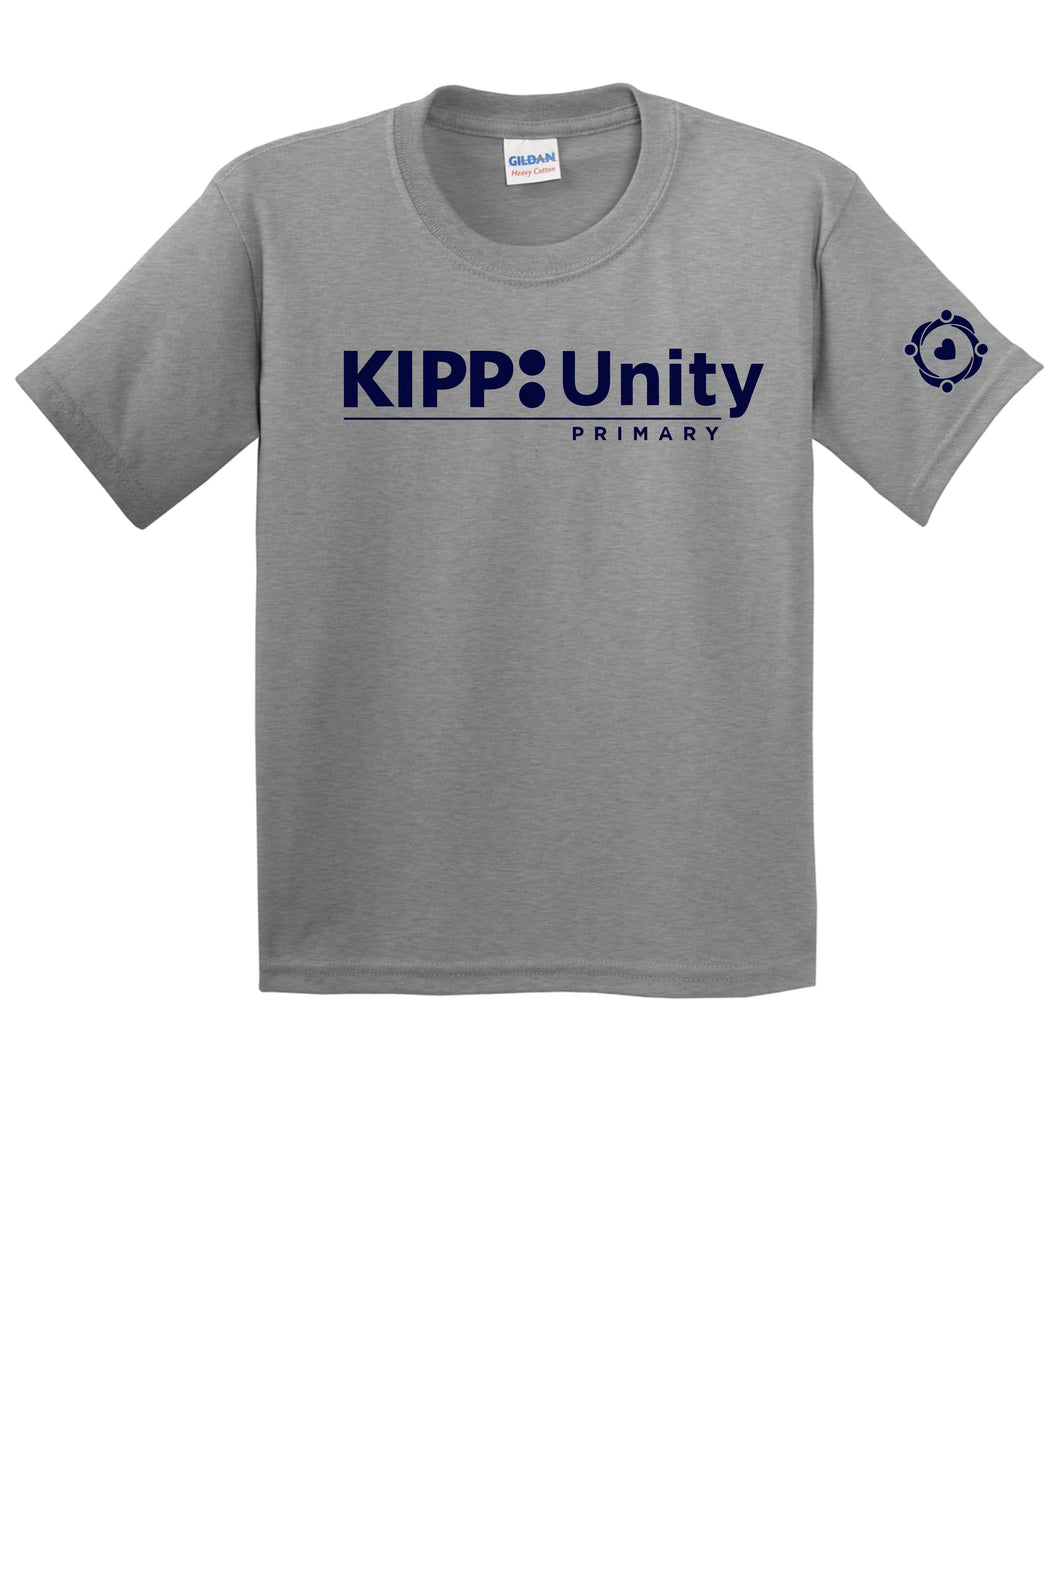 KIPP Unity Primary Friday Shirt